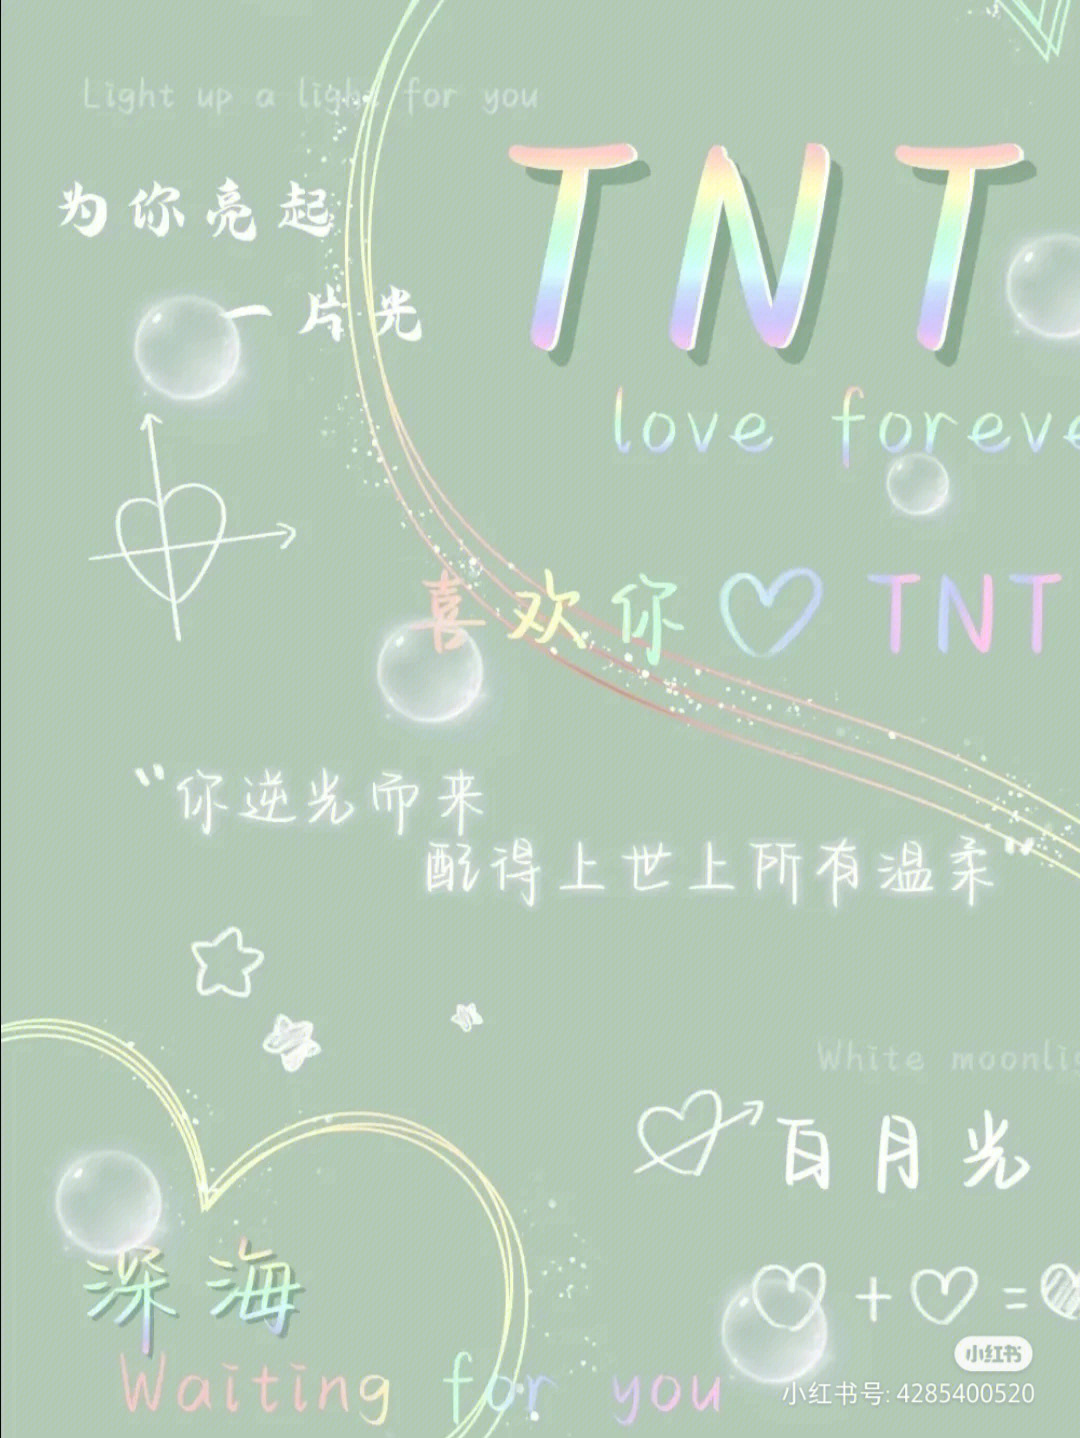 TNT标志壁纸图片